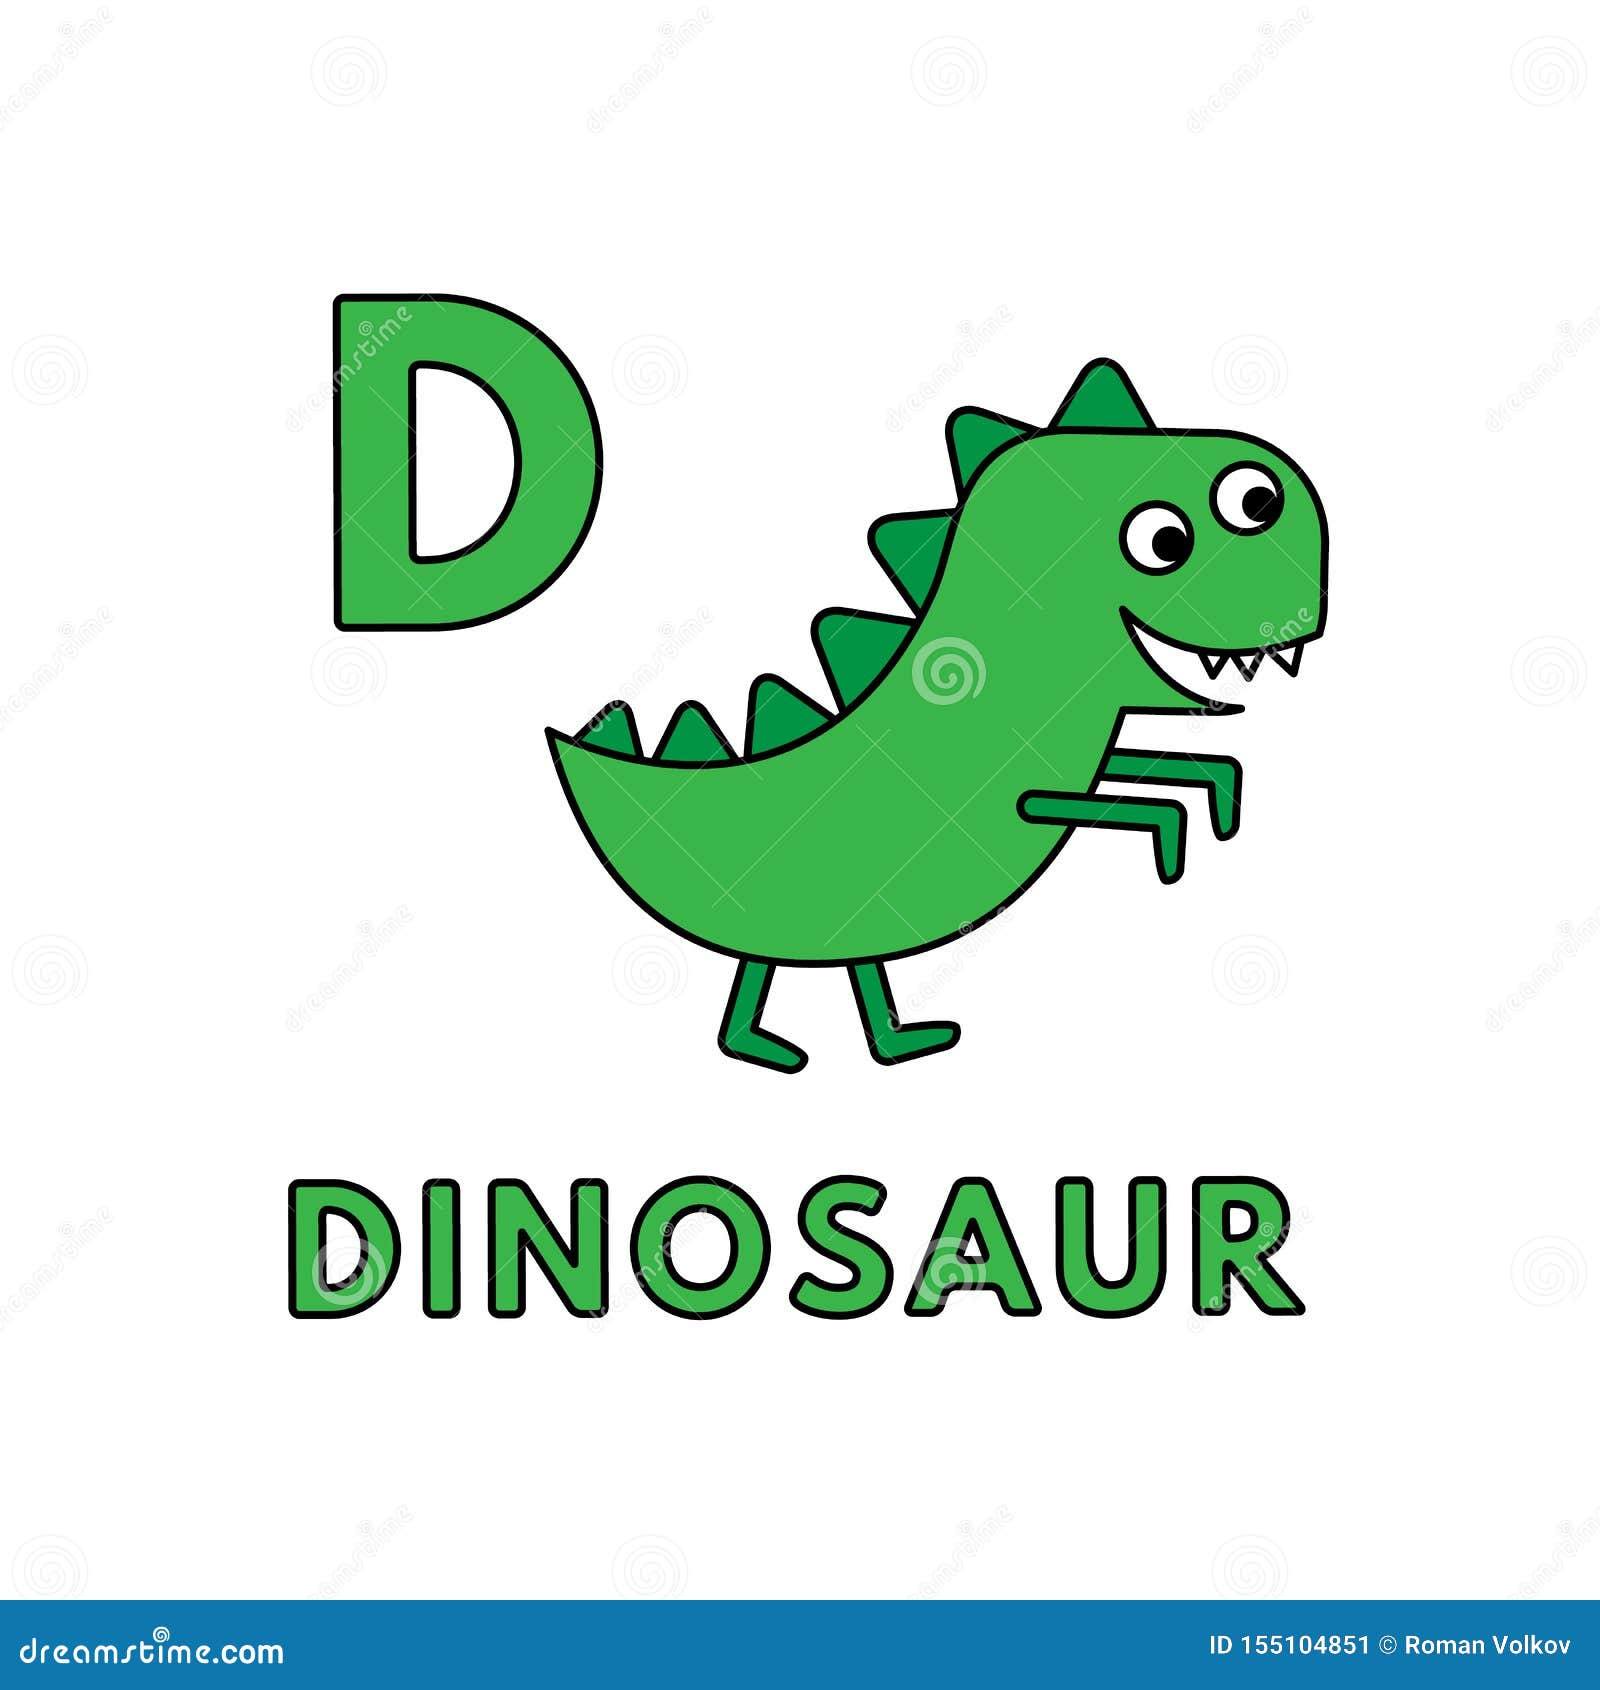 Динозавр на английском. Динозавр по английскому языку. Динозавры на английском. Динозаврик на английском. Динозавр Letter d.